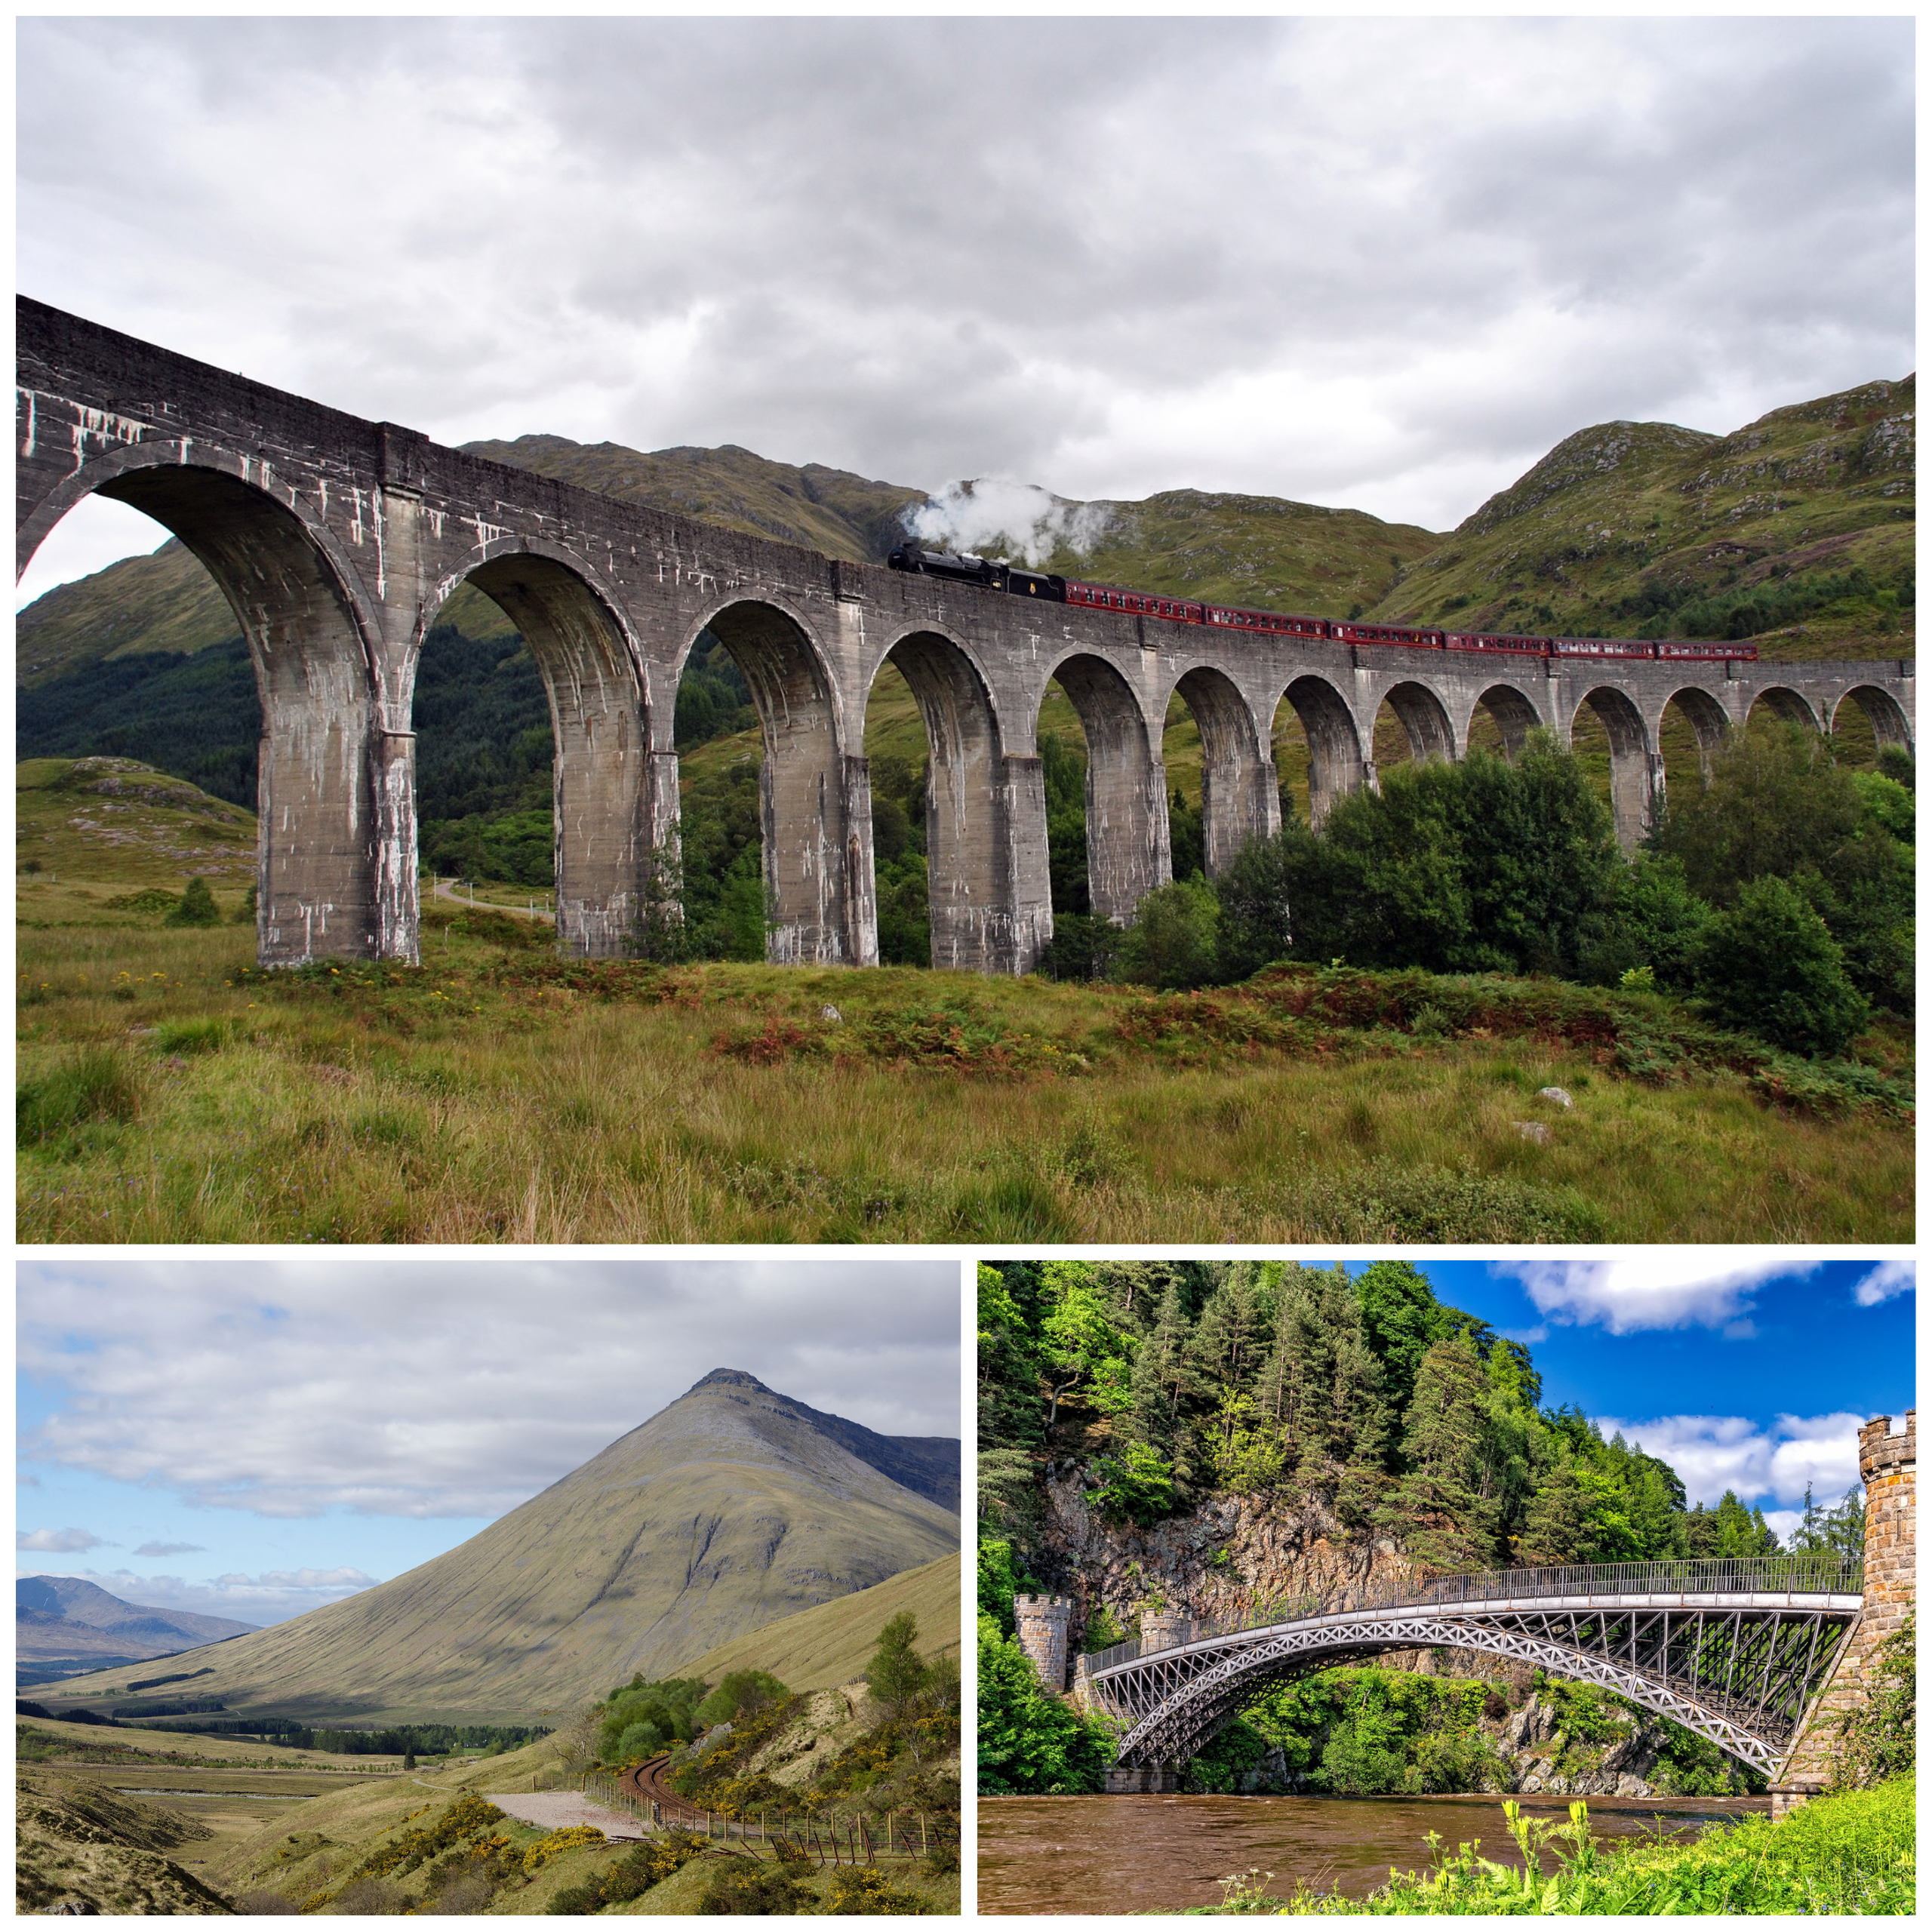 Klem Arne Vertrek Scenic Rail Journeys in Scotland - Travel Blog